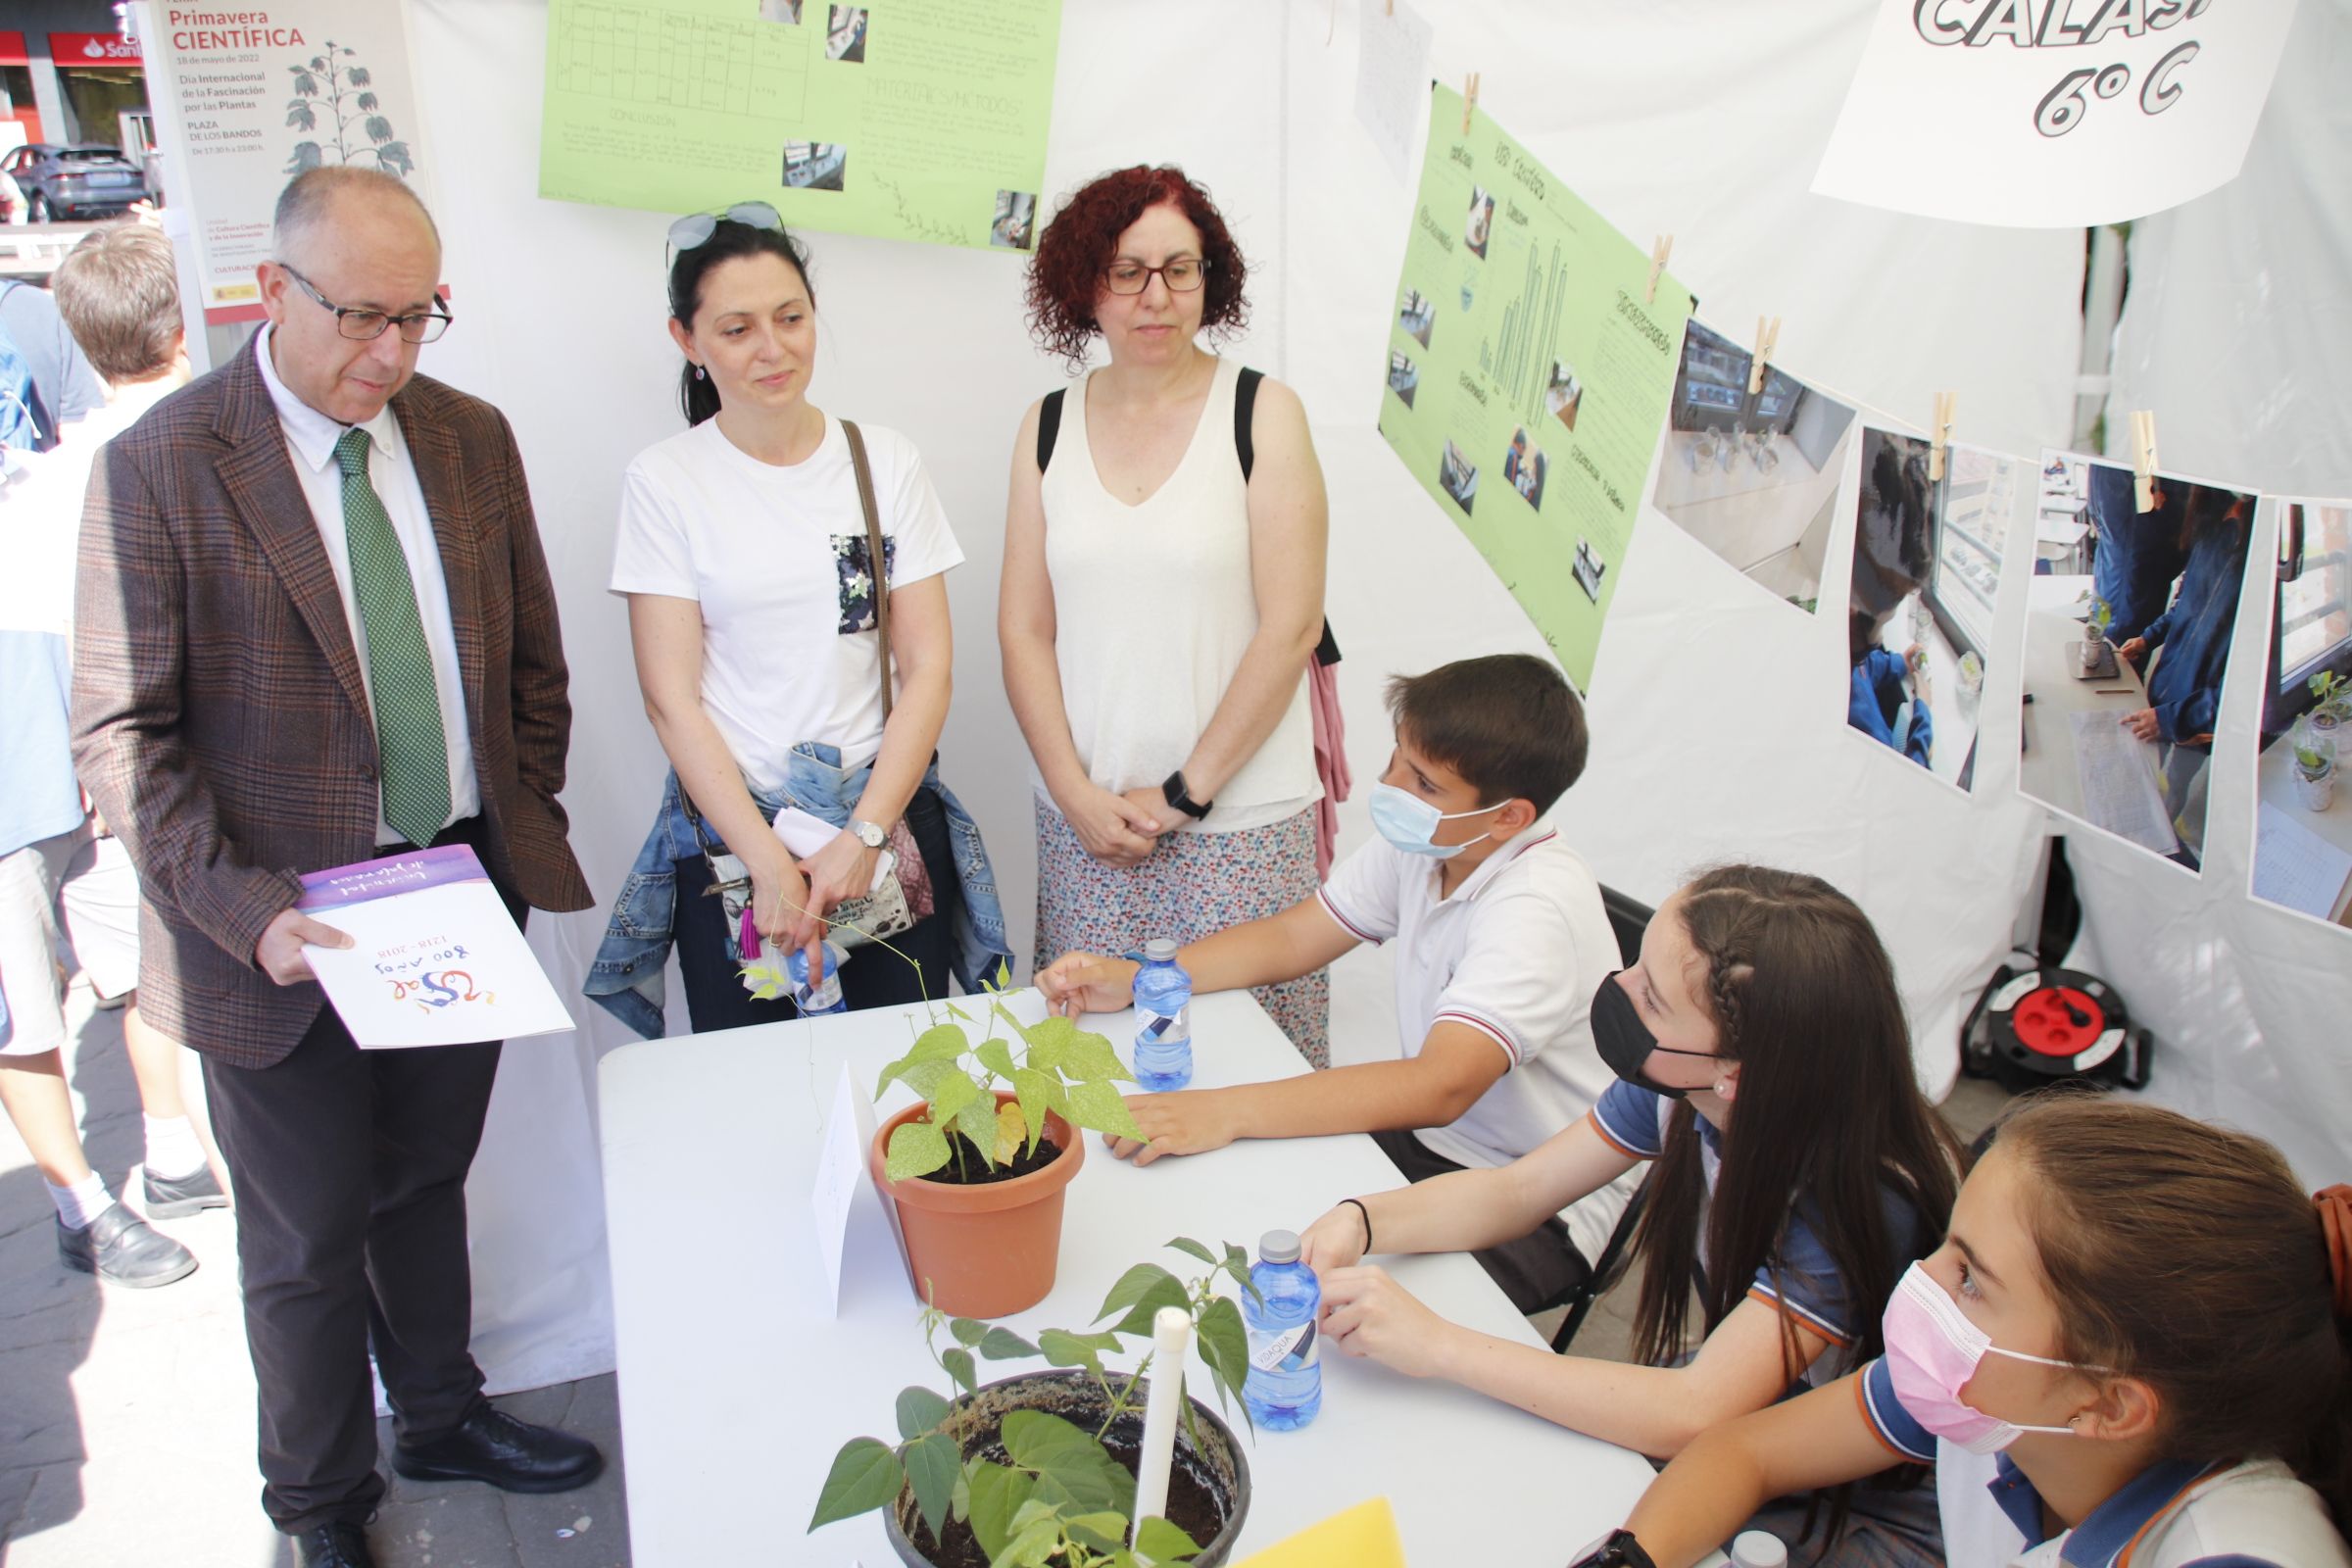 José Miguel Mateos Roco, inaugura la VII Feria “Primavera Científica”